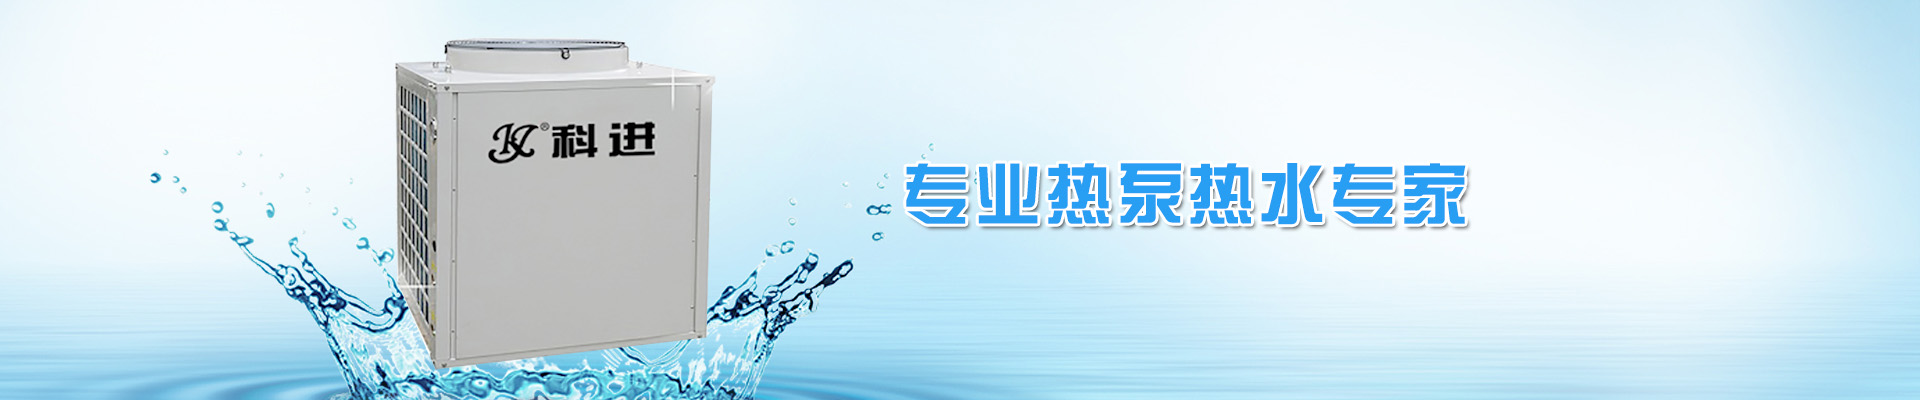 亳州全程综合水处理器